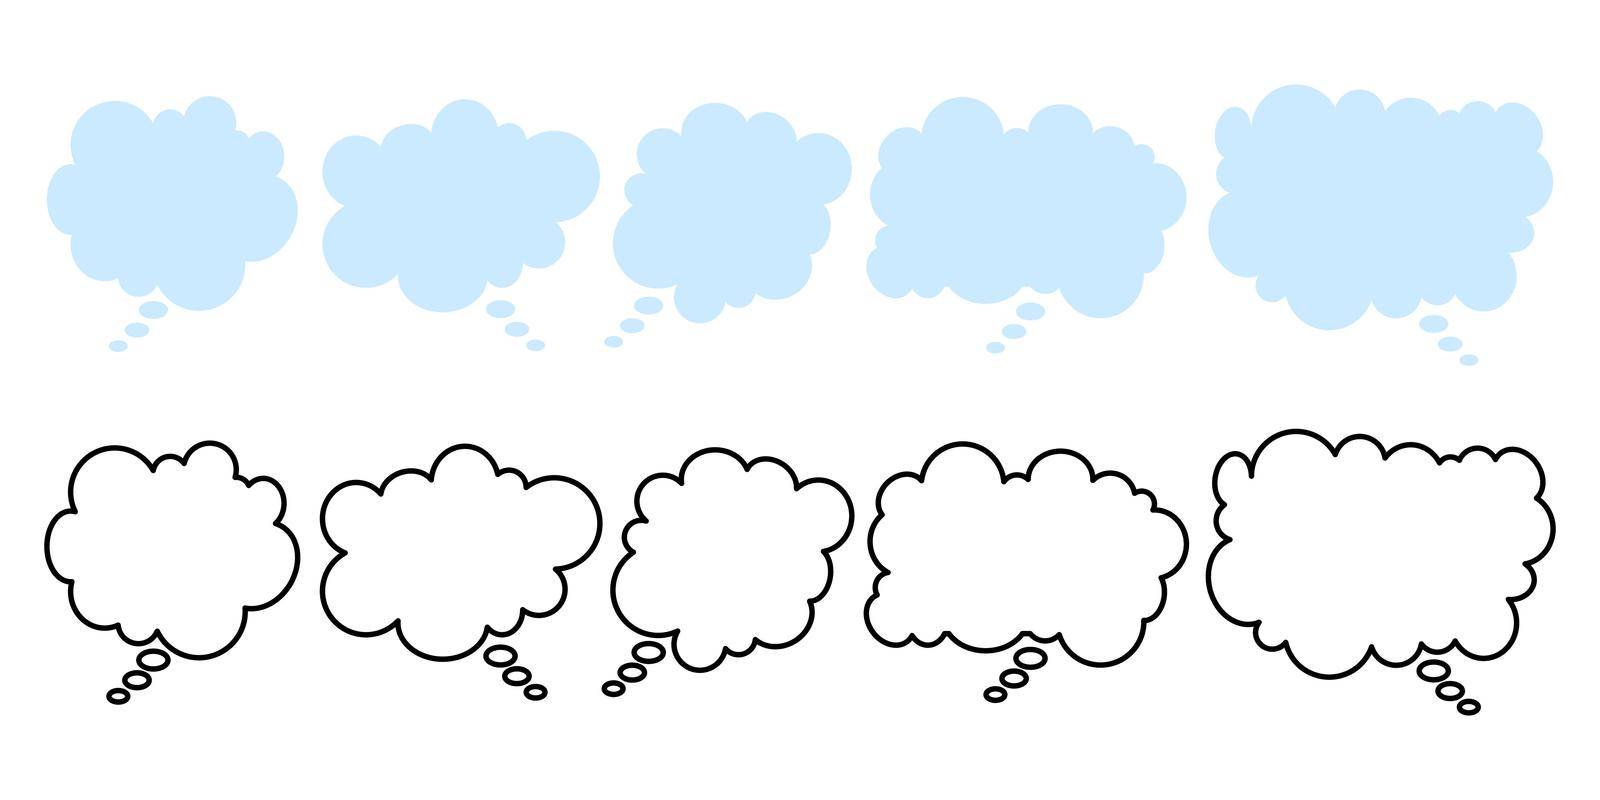 Cloud speech bubbles by Mallva